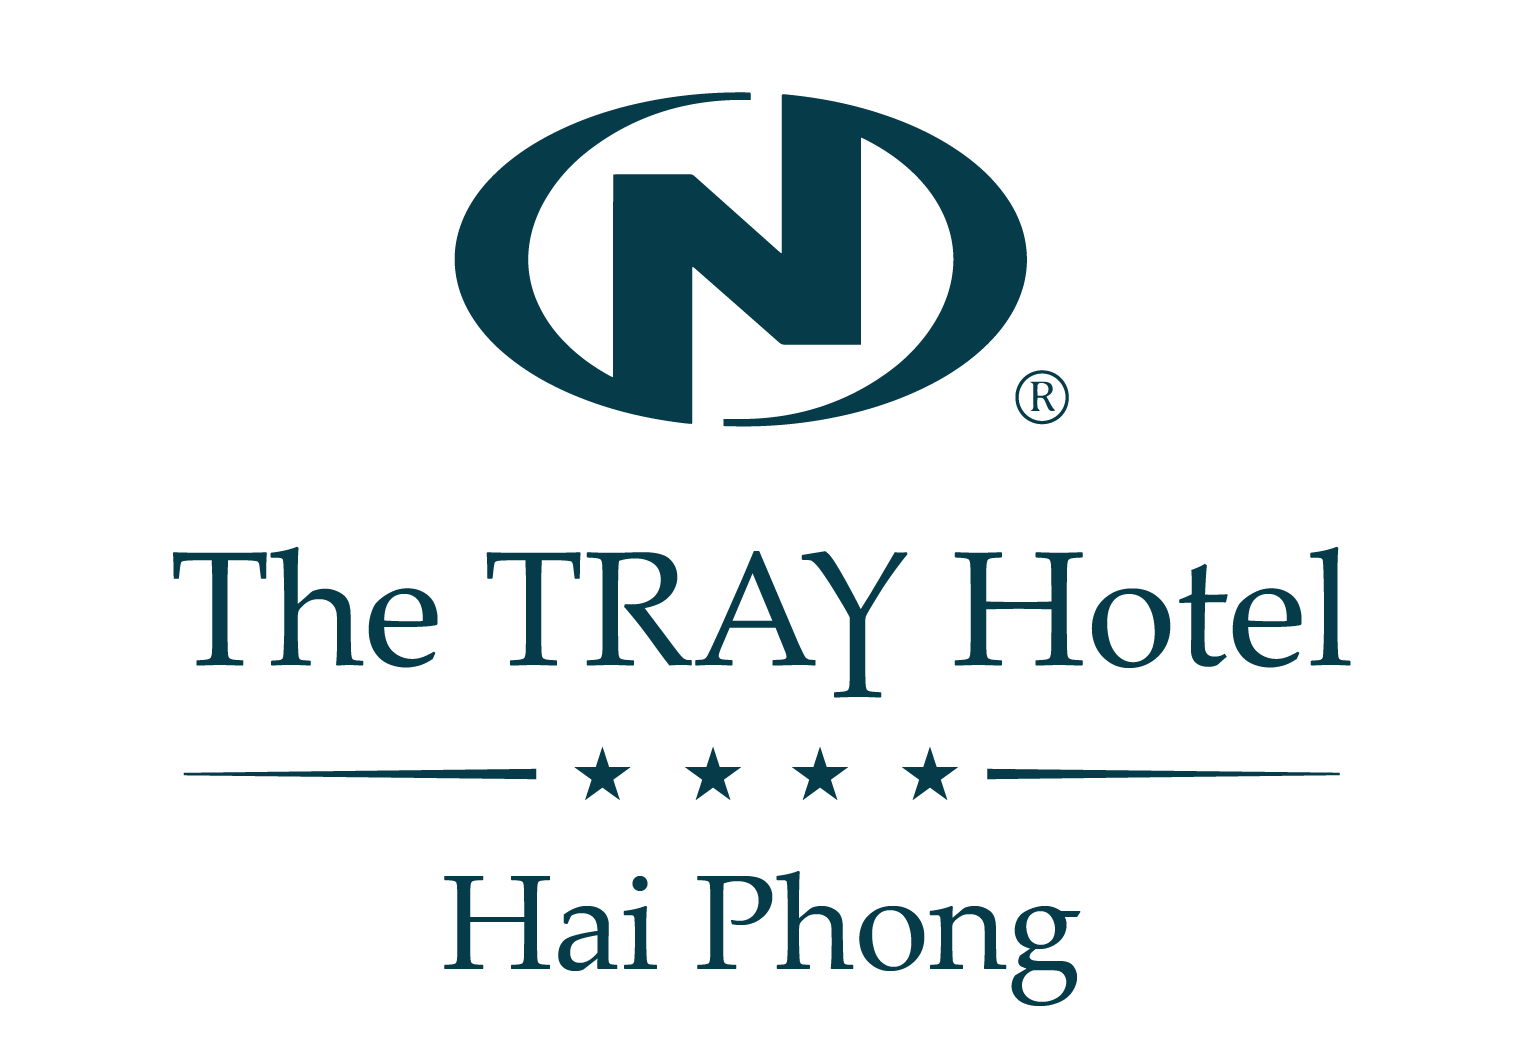 Tray hotel